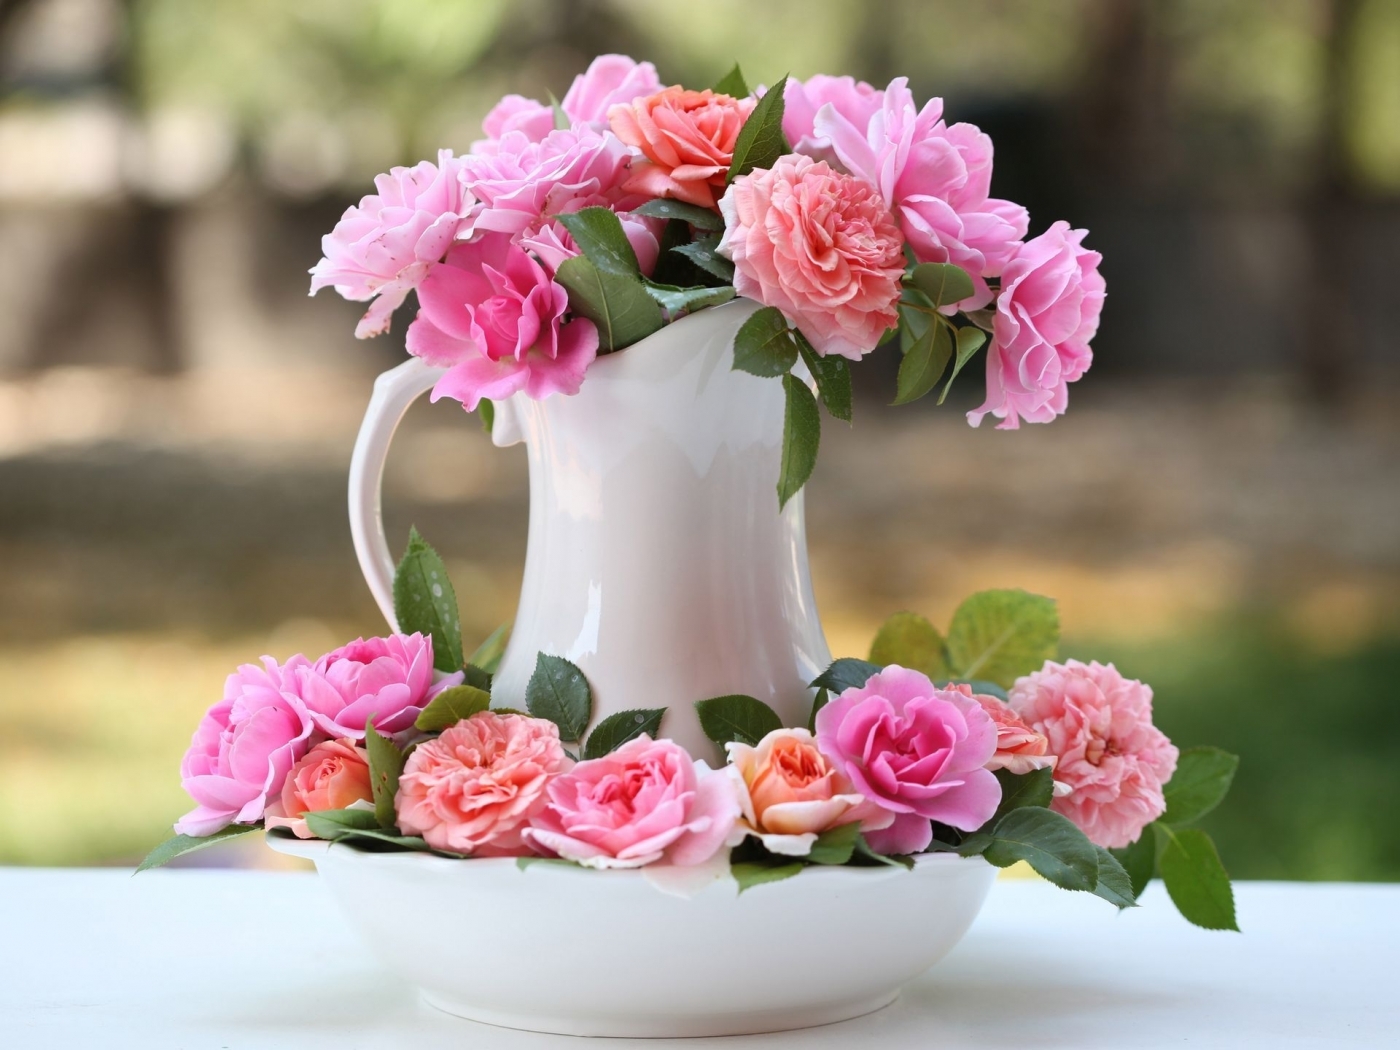 Скачать обои бесплатно Букеты, Цветы, Растения, Розы картинка на рабочий стол ПК